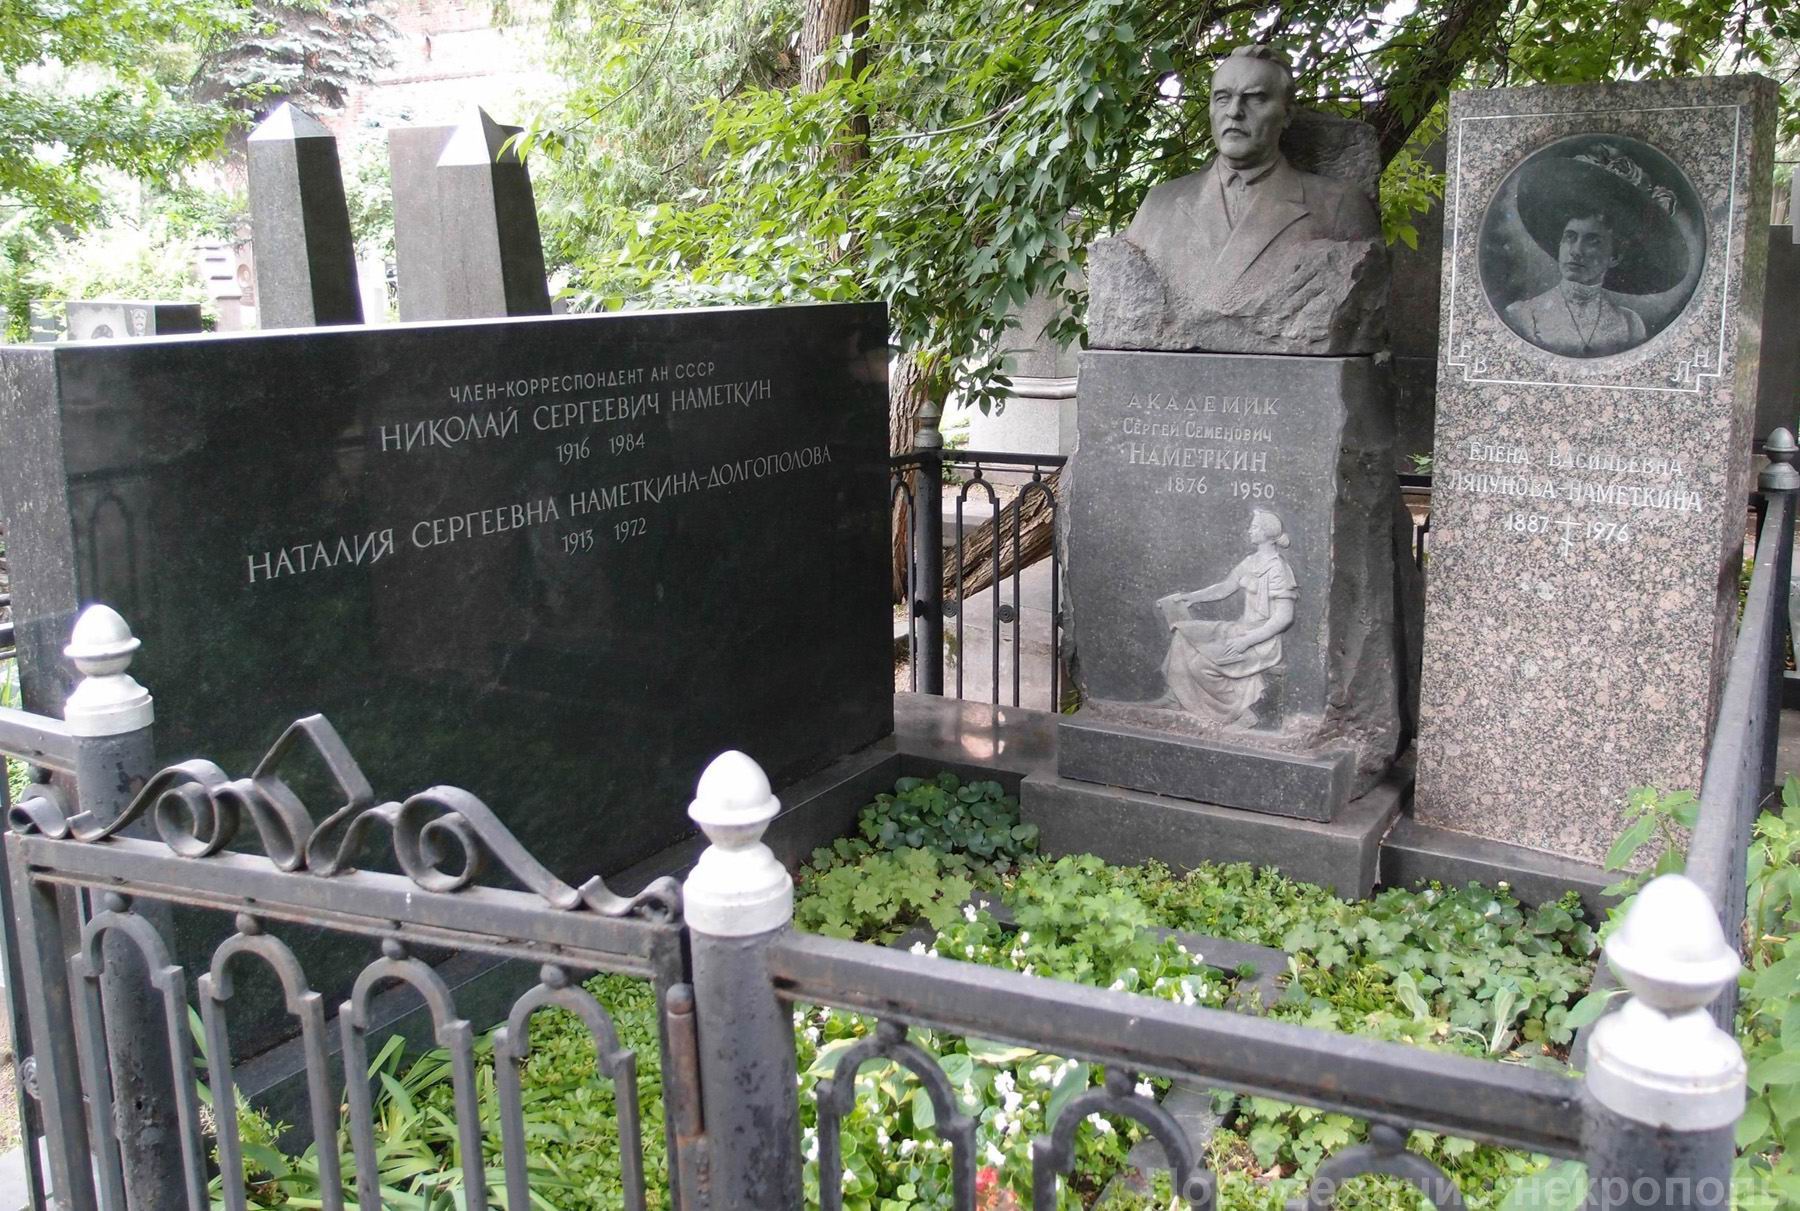 Памятник на могиле Намёткина С.С. (1876–1950), ск. Д.Шварц, и Н.С. (1916–1984), на Новодевичьем кладбище (3–59–2). Нажмите левую кнопку мыши, чтобы увидеть фрагменты памятника.